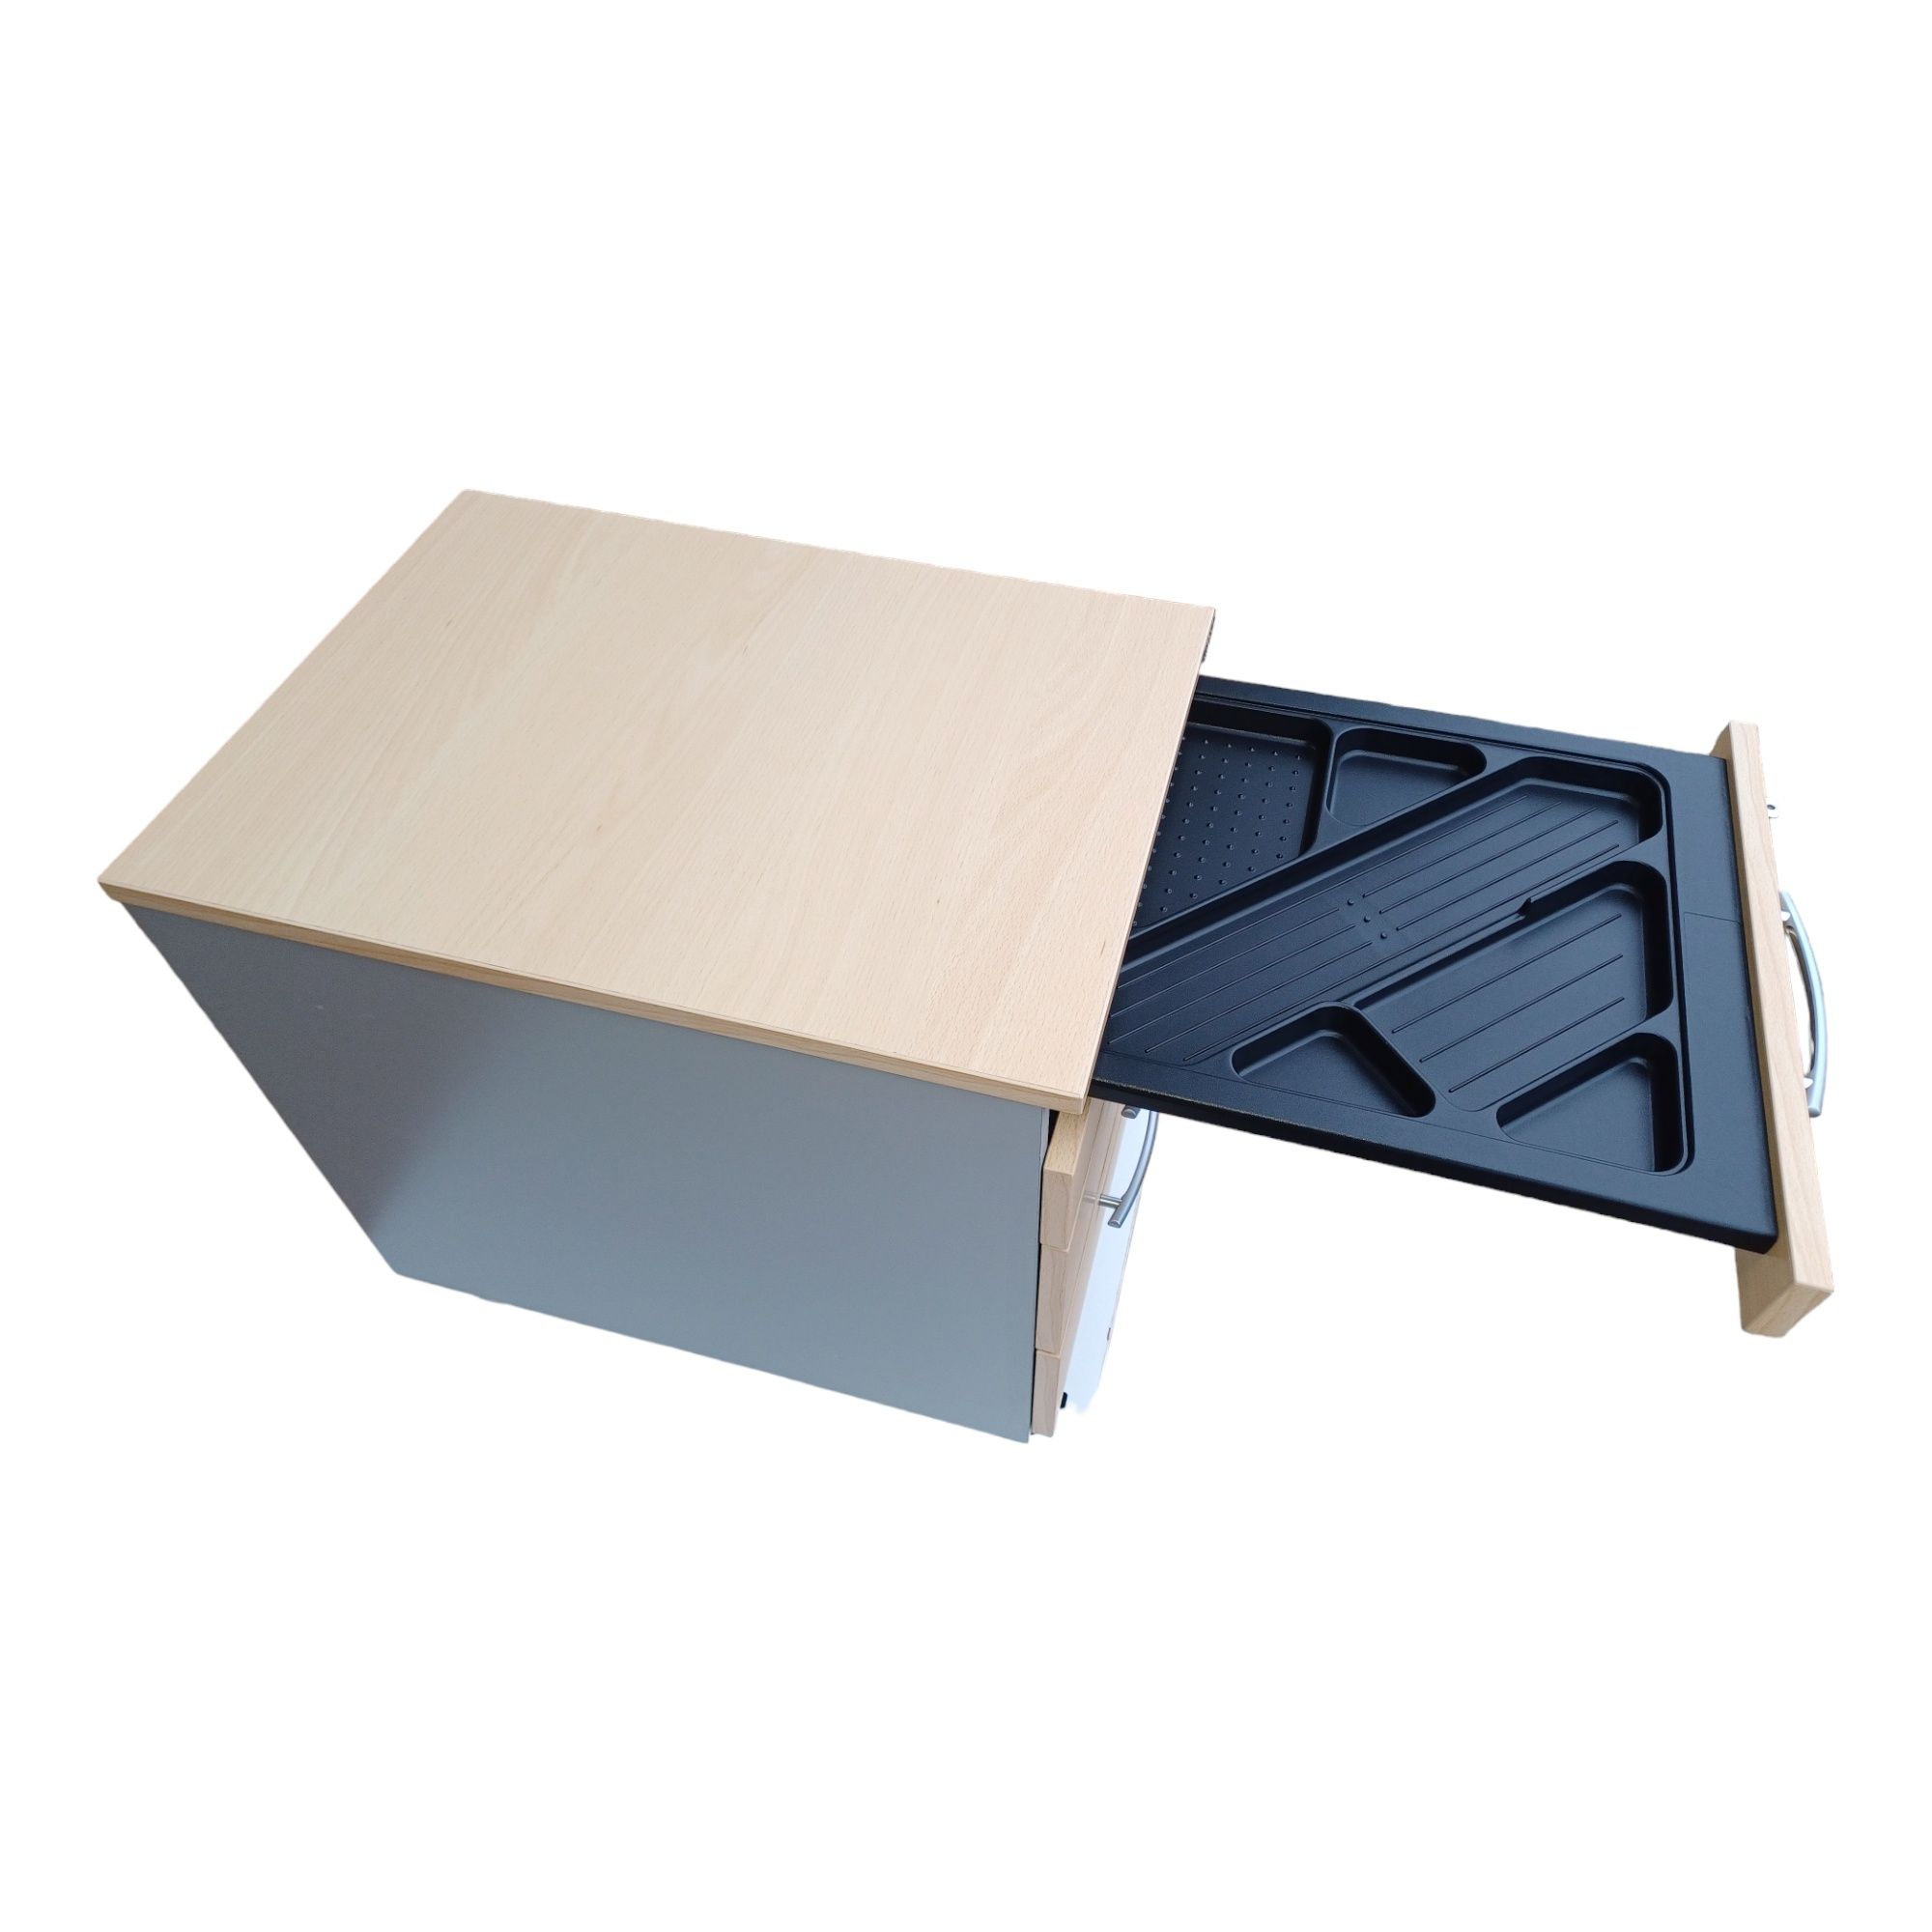 Komoda, szafka, kontenerek biurowy - 4 szuflady - centralny zamek